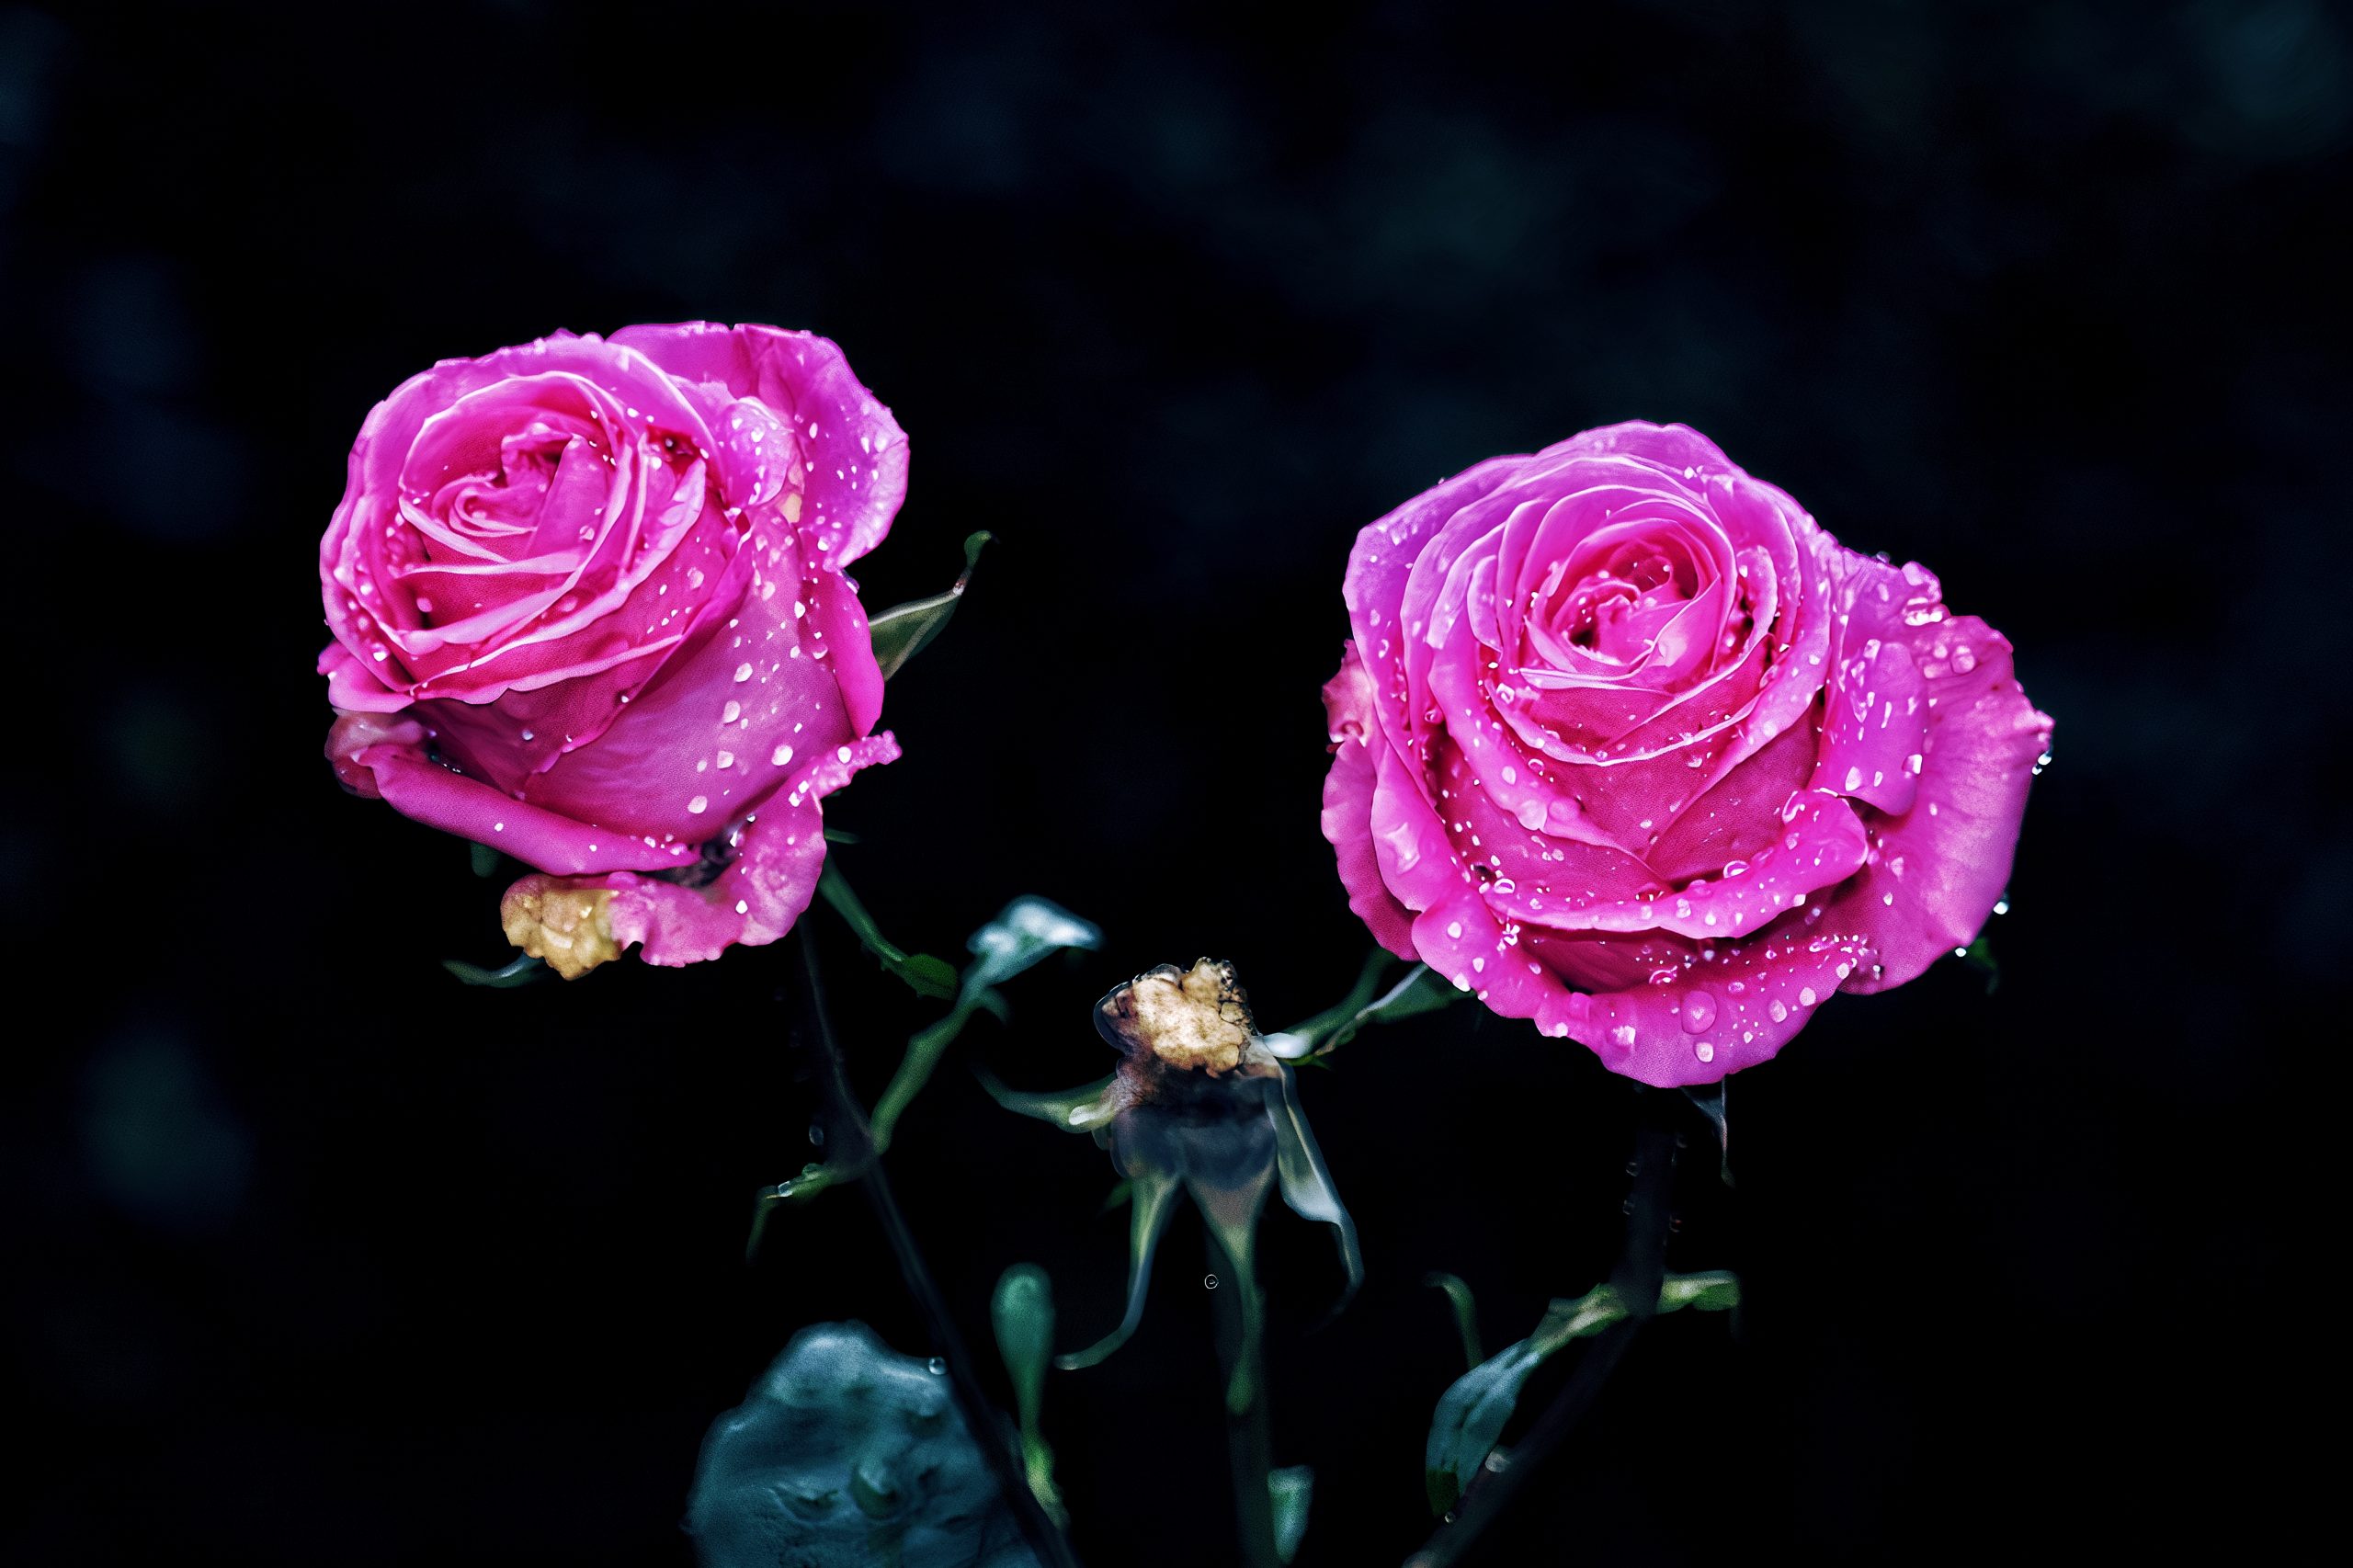 Shining Pink Roses